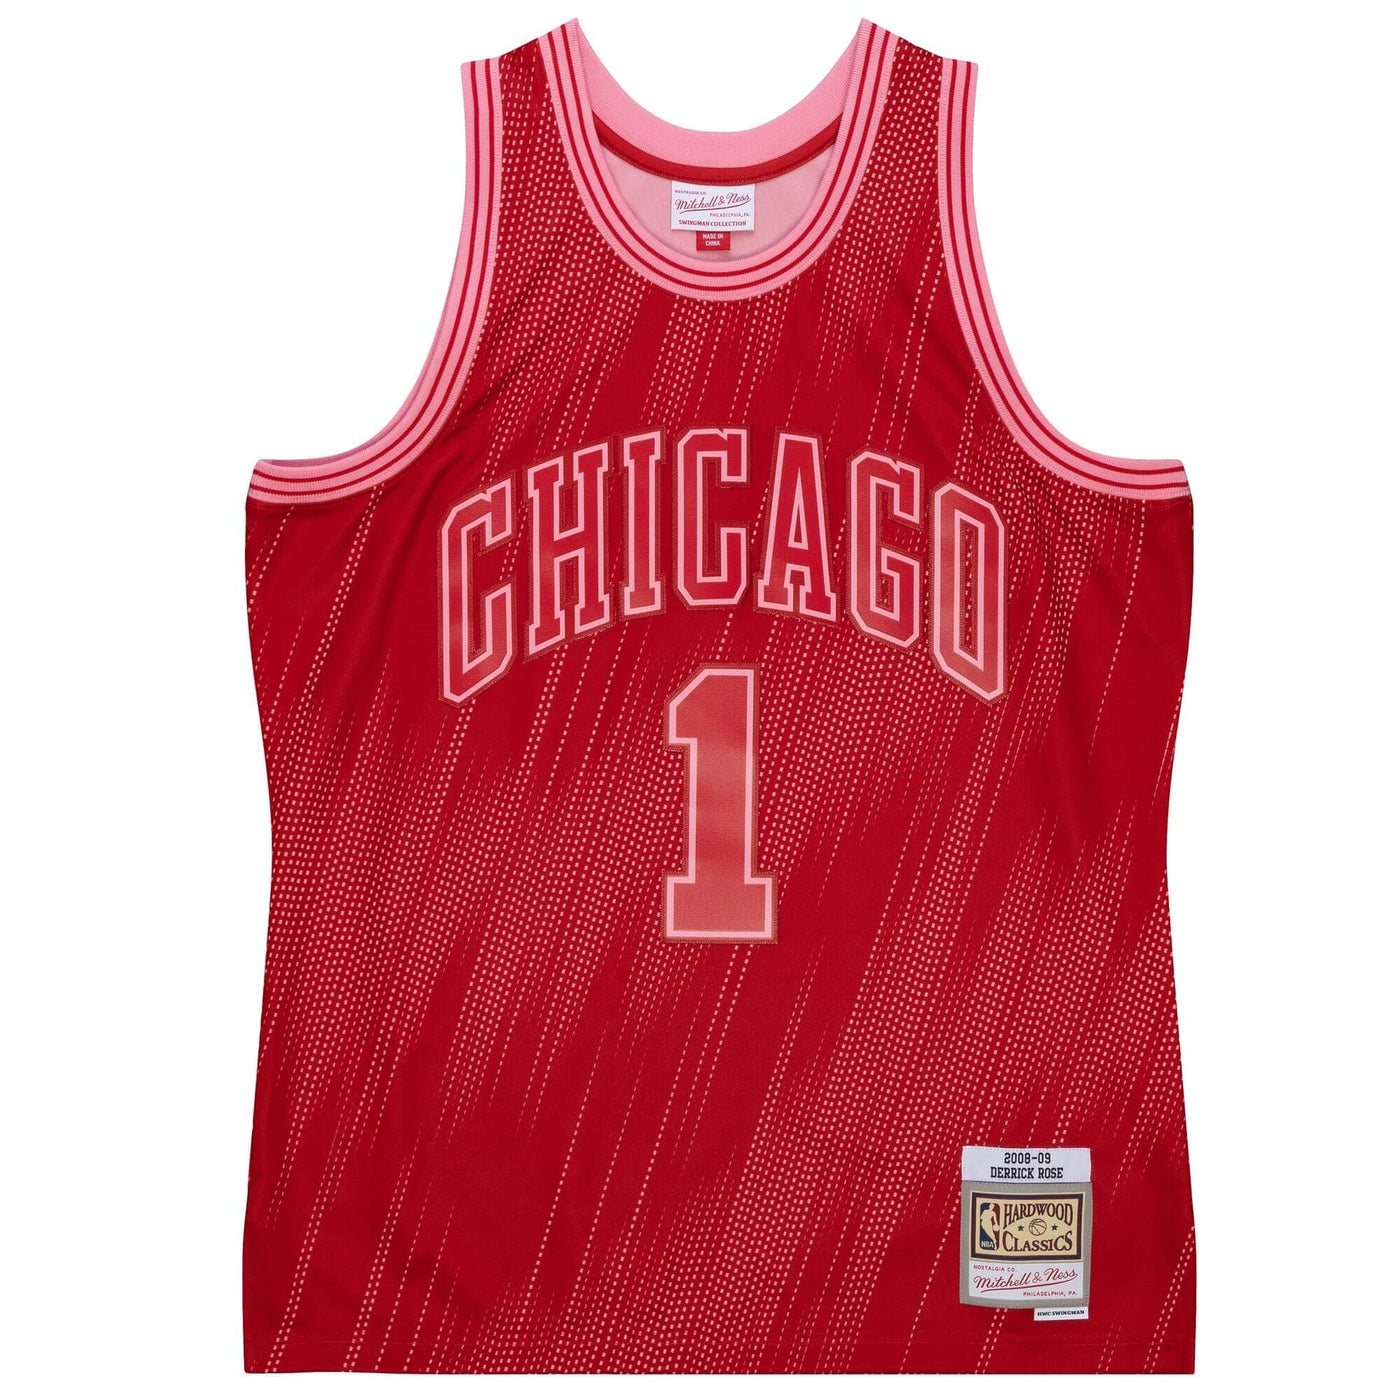 قميص فريق نجوم الدوري بتصميم أحادي اللون لفريق شيكاغو بولز عام 2008 بلاير ديريك روز